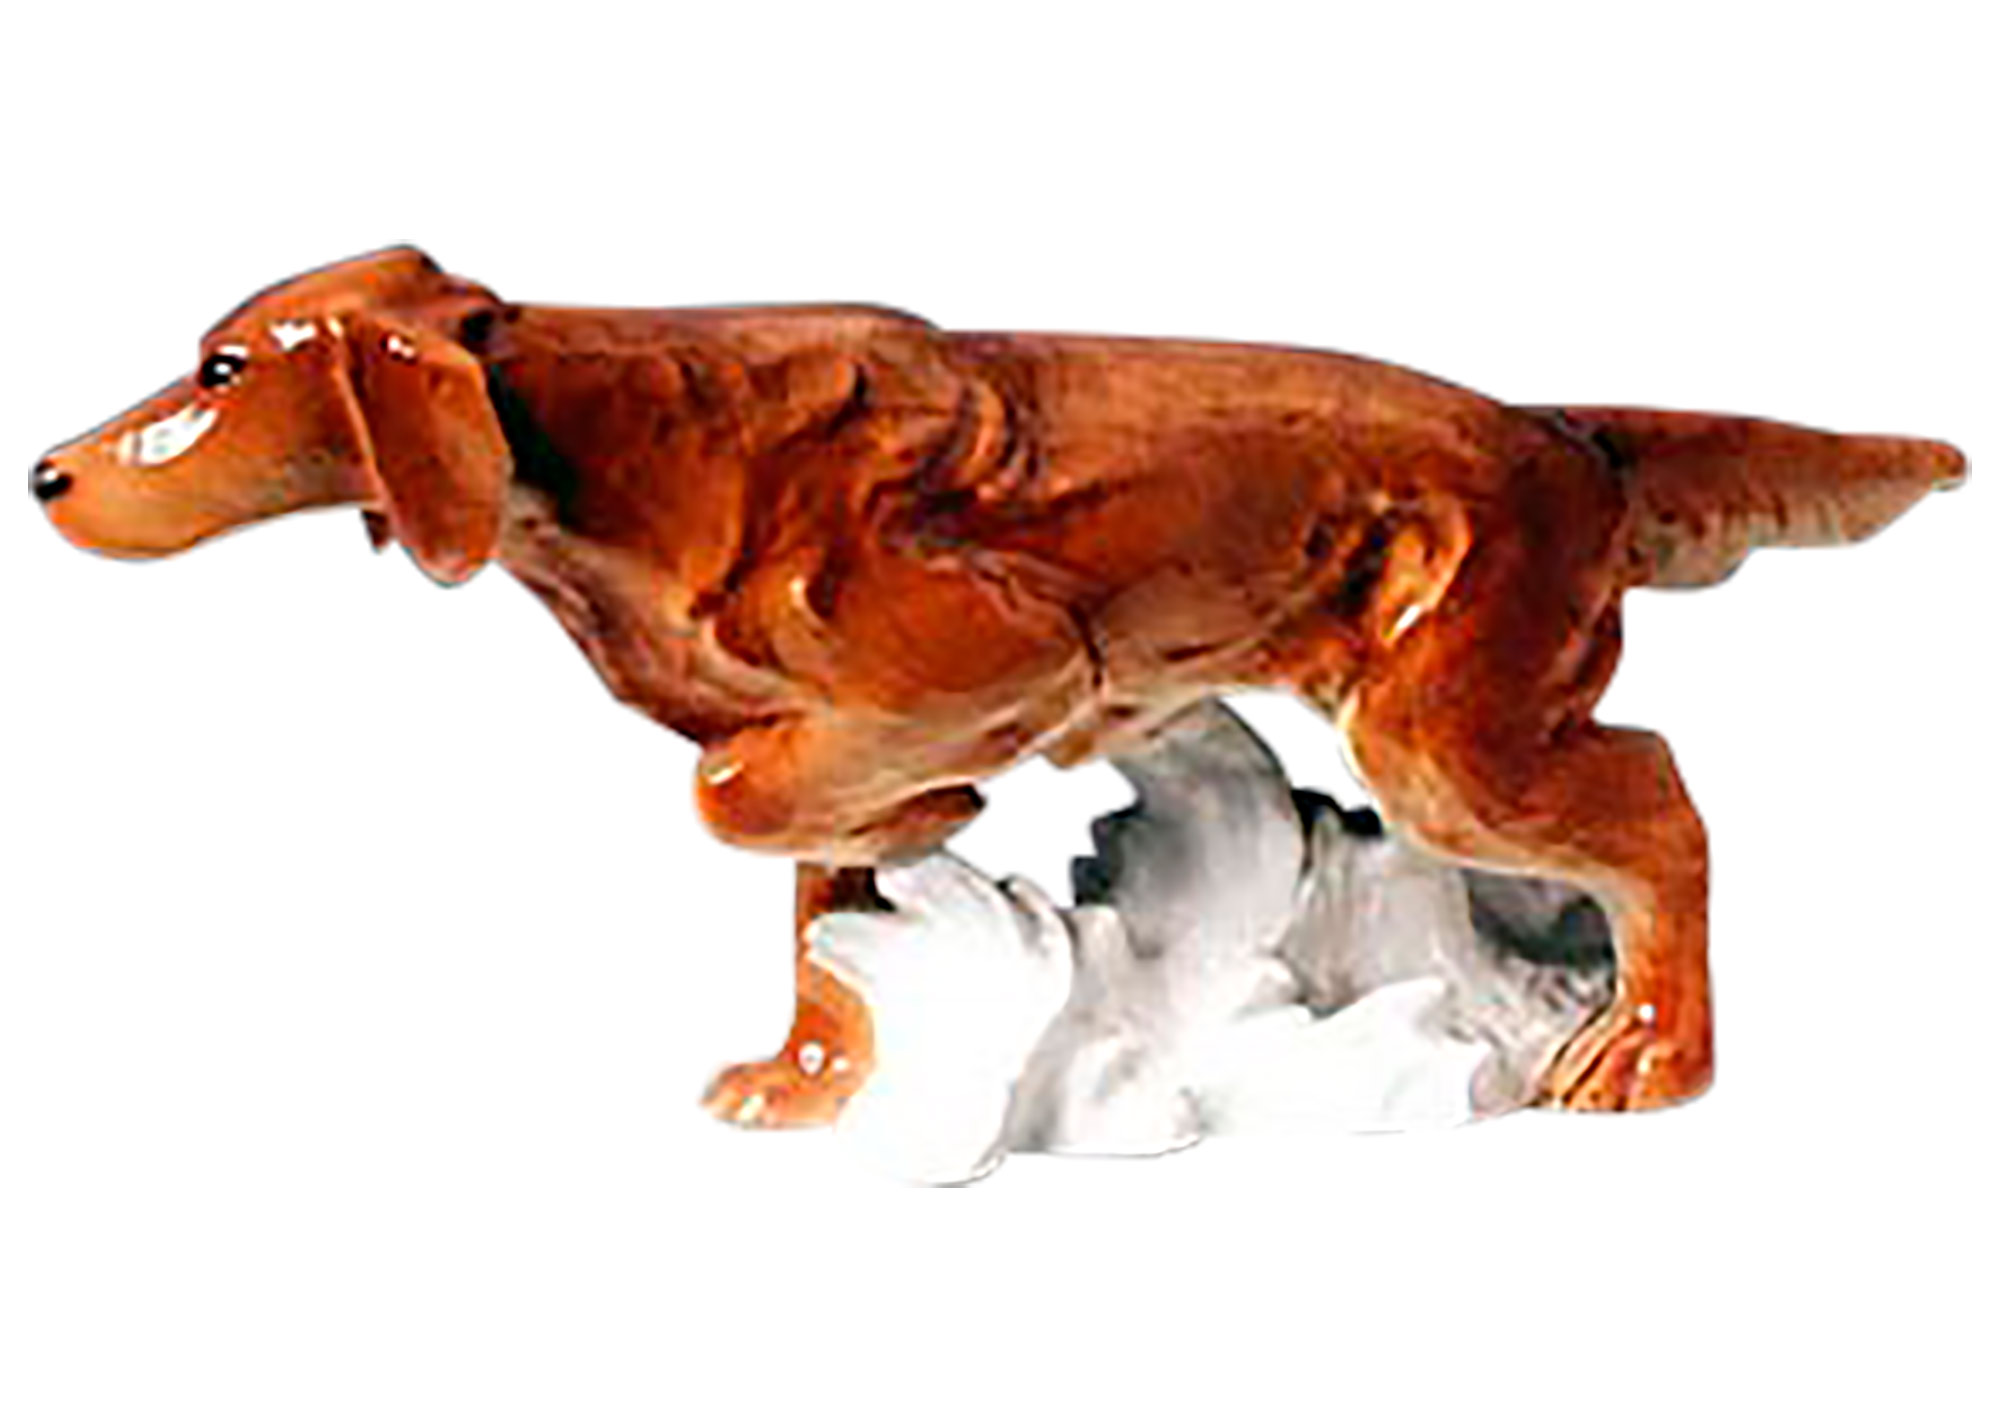 Buy Irish Setter Dog Figurine at GoldenCockerel.com